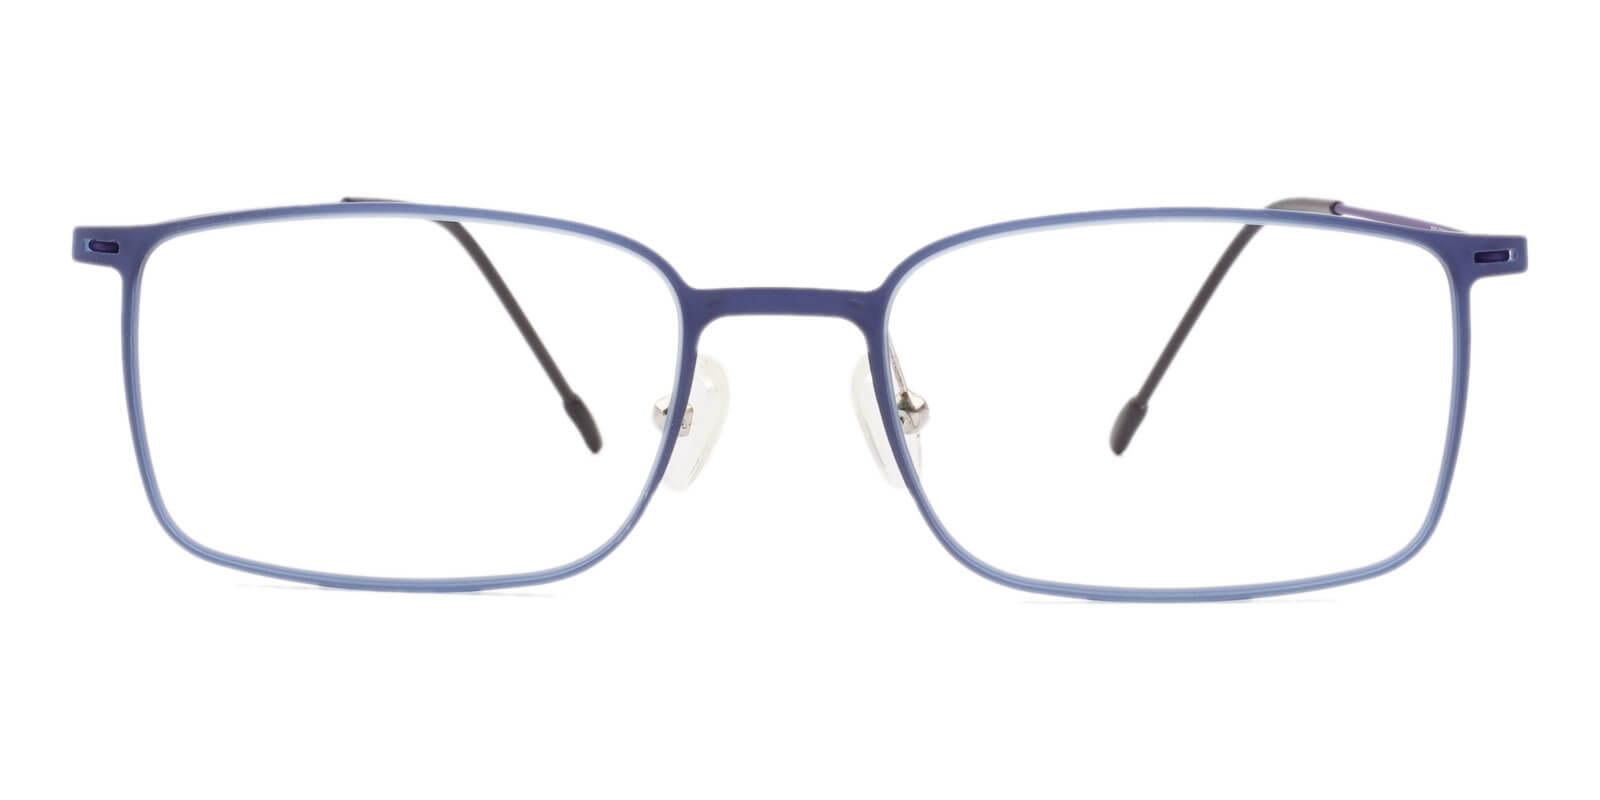 Philadelphia Blue Combination Eyeglasses , Lightweight , NosePads Frames from ABBE Glasses